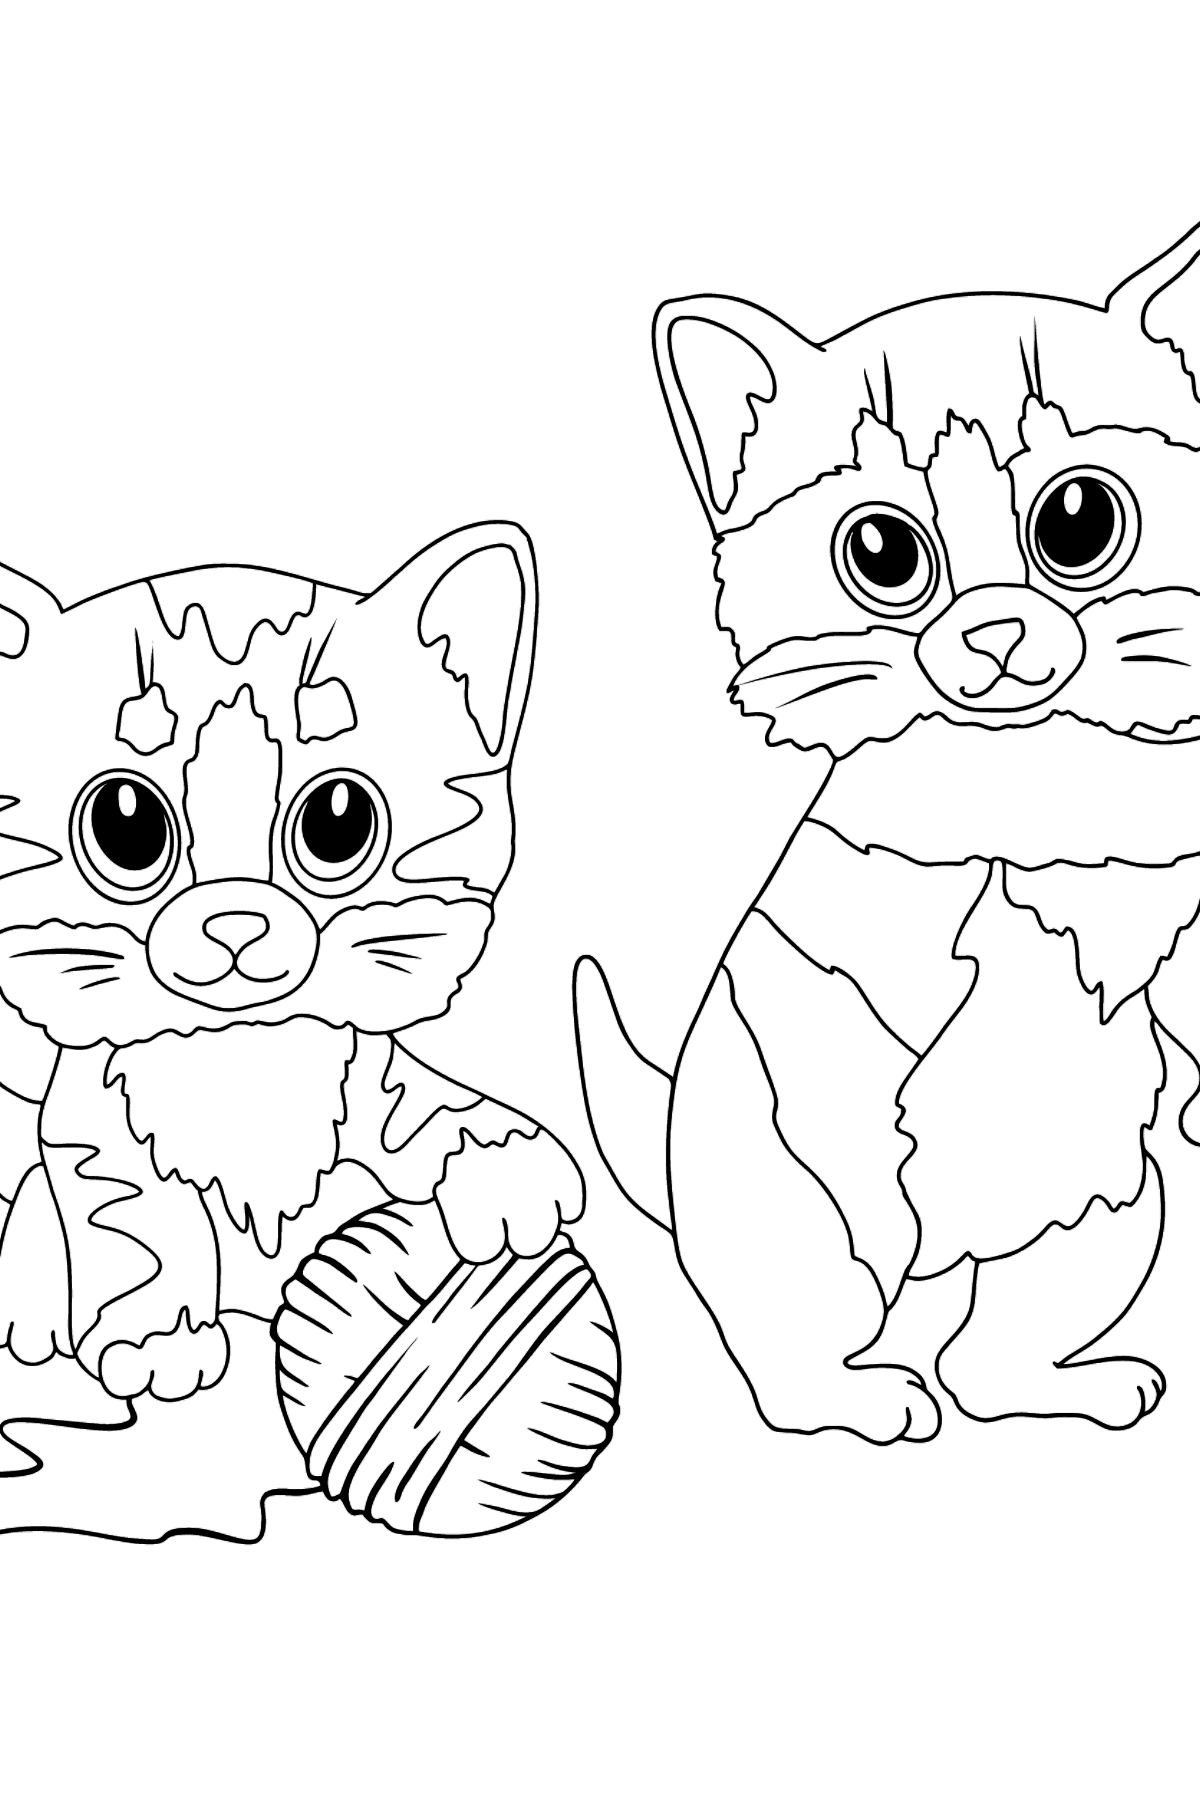 Dibujo de Gatitos y ovillo de lana para colorear - Dibujos para Colorear para Niños